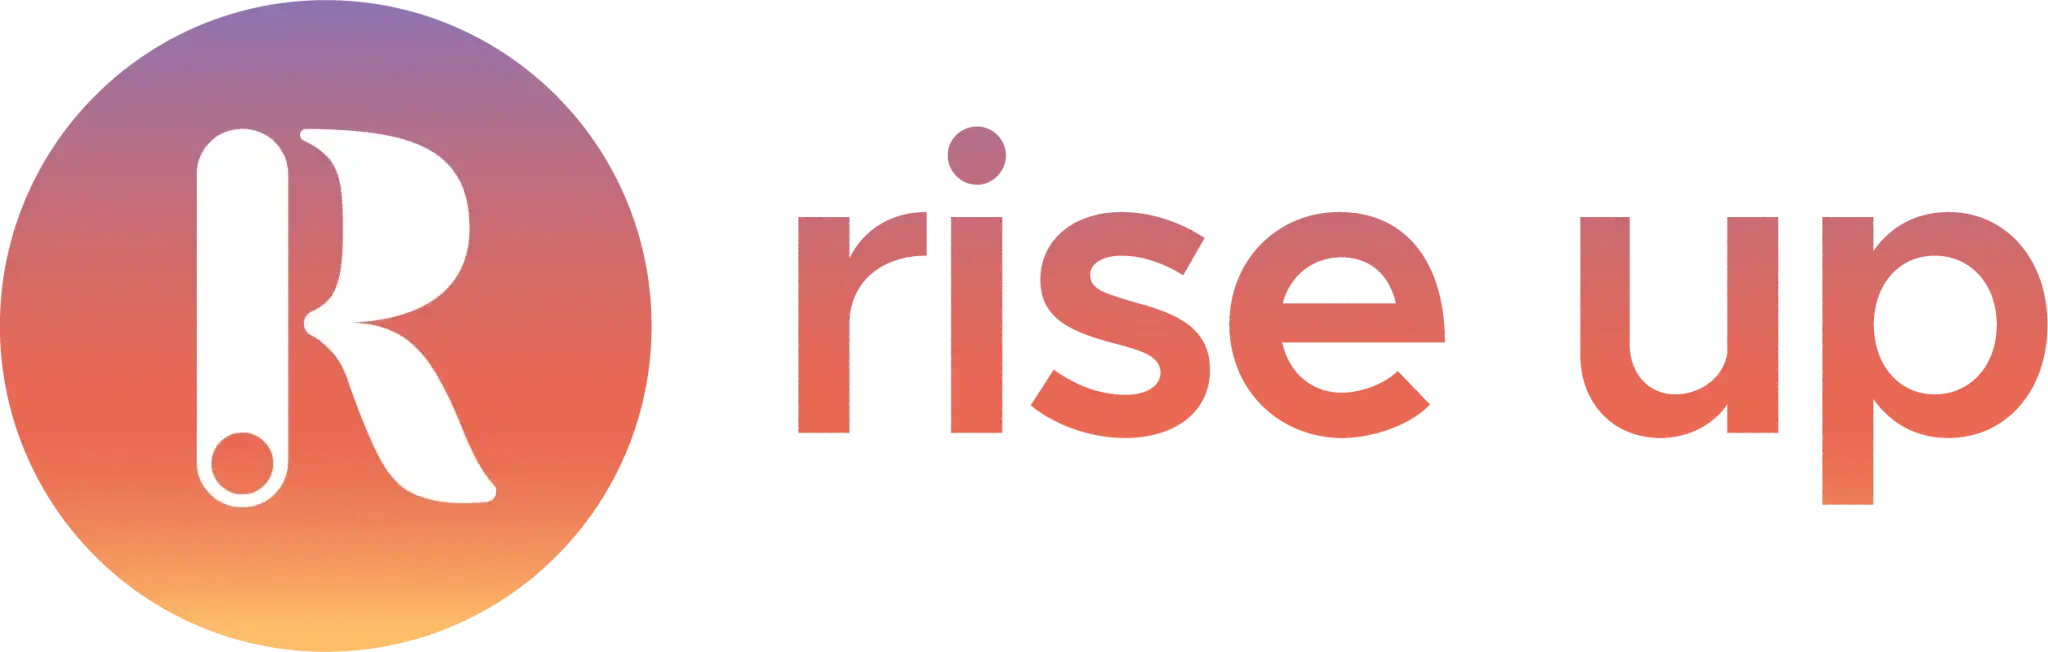 Logo Rise up PeopleSpheres